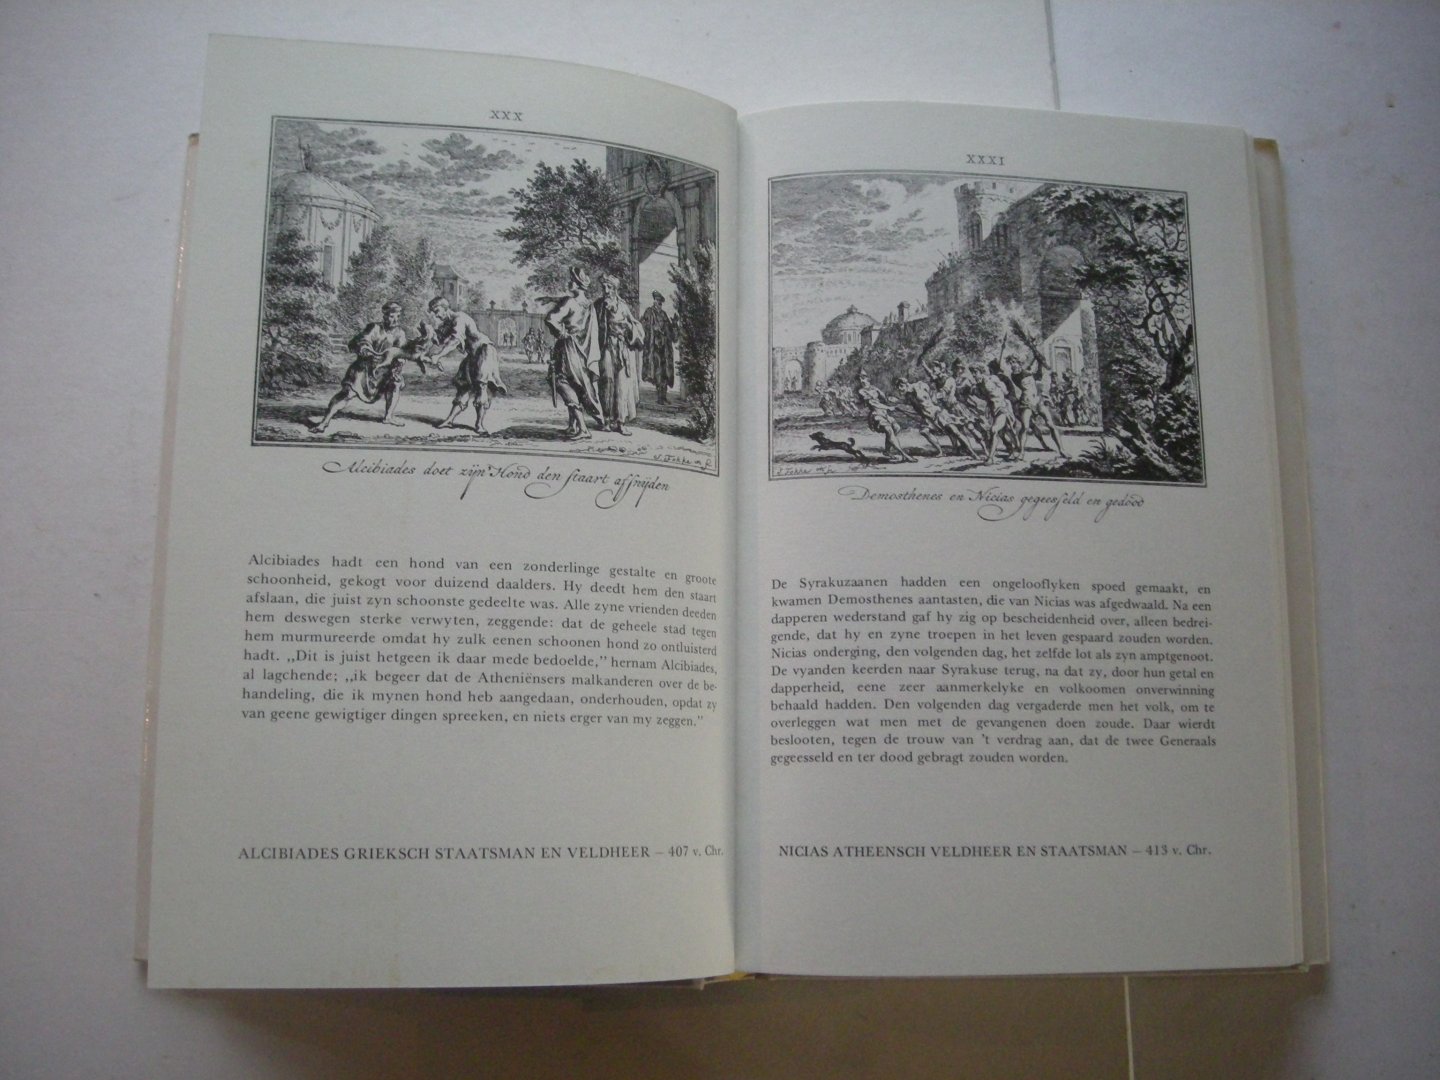 Rollin, Charles (teksten 1661-1741)  / Fokke, Simon (1712-1784), in kooper gebragt - Merckwaerdighe tooneelen uit de Waereldgeschiedenis.  (Histoire ancienne 1730-1738)   Facsimile